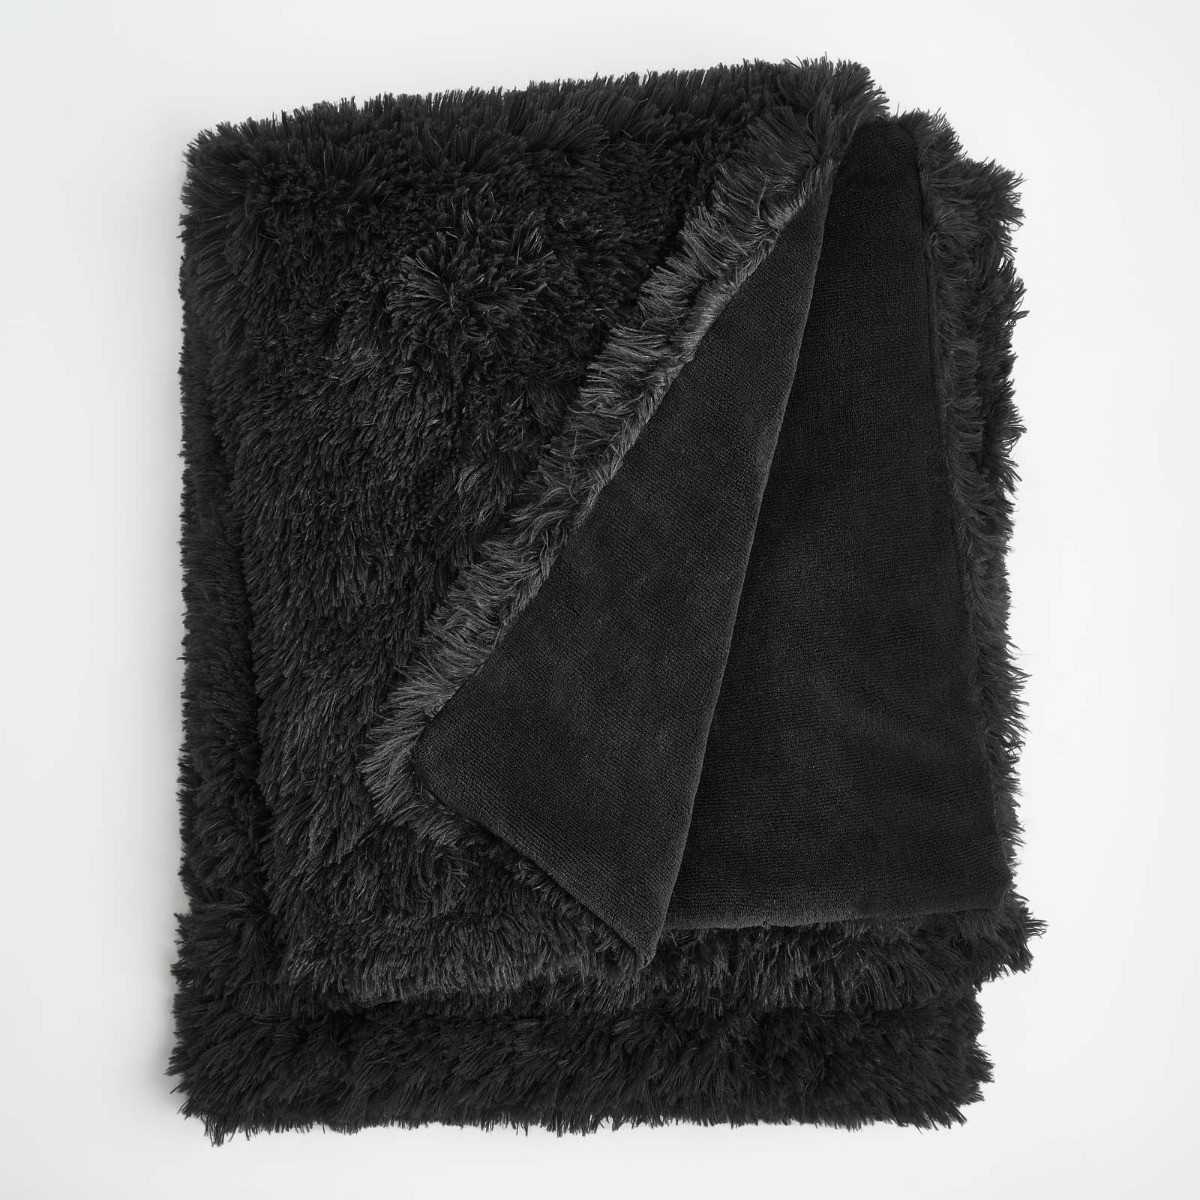 Sienna Fluffy Throw, Black - 150 x 200cm>